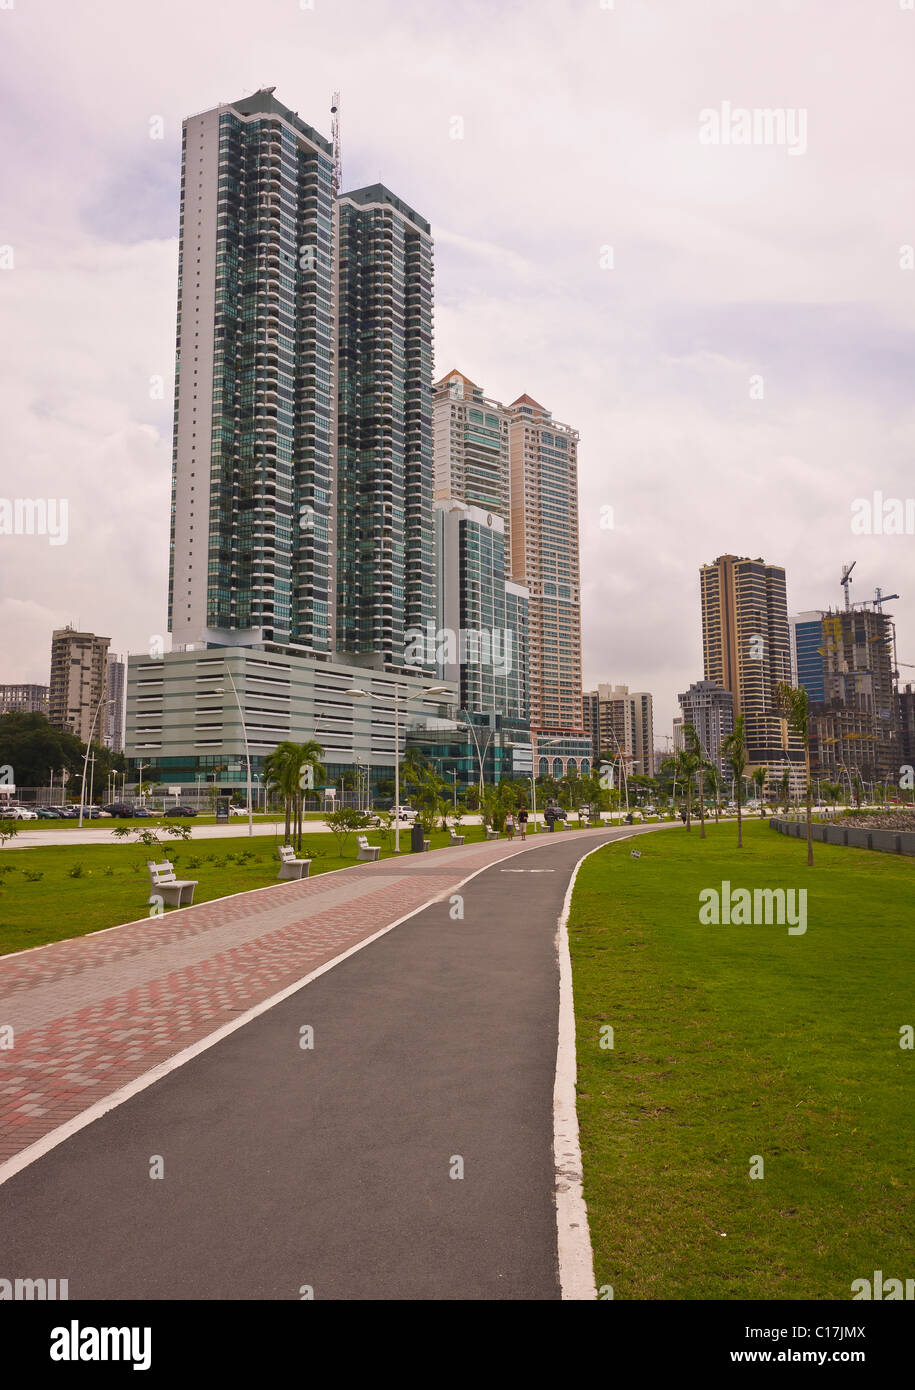 La ville de Panama, Panama - Trottoir en park et gratte-ciel sur Balboa Avenue. Banque D'Images